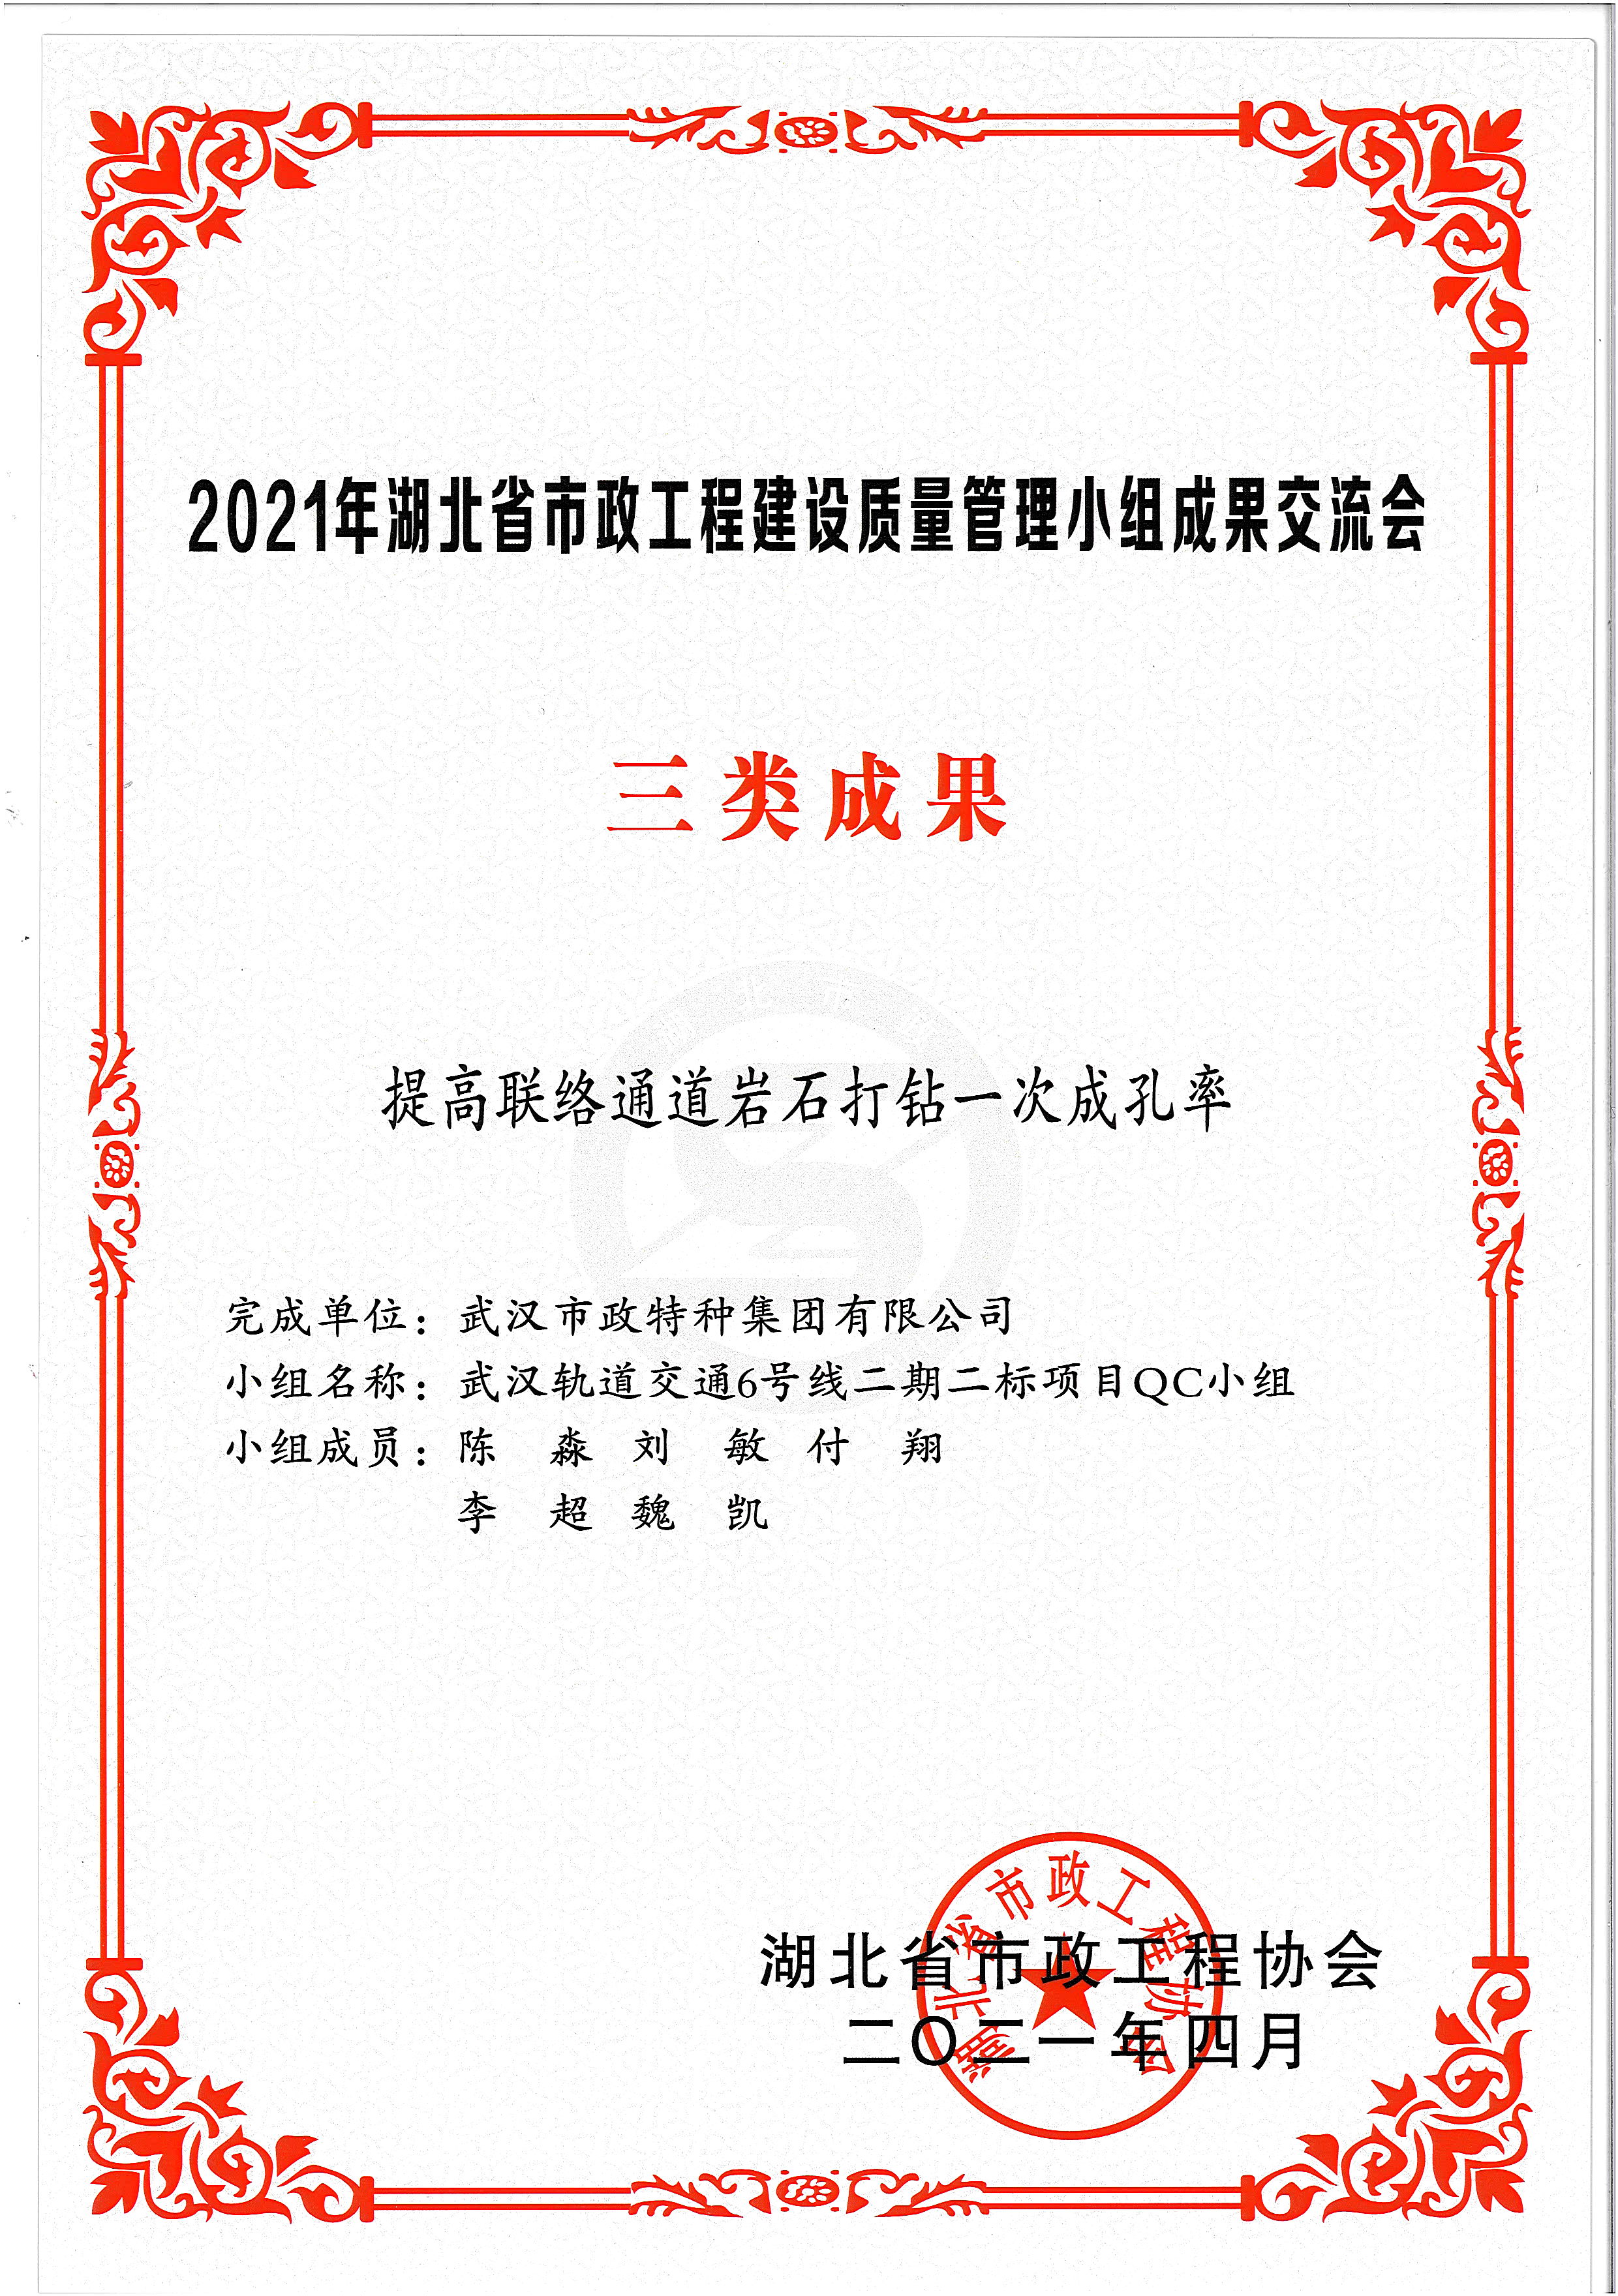 湖北省市政協會QC成果獎——提高聯絡通道巖石打鉆一次成孔率